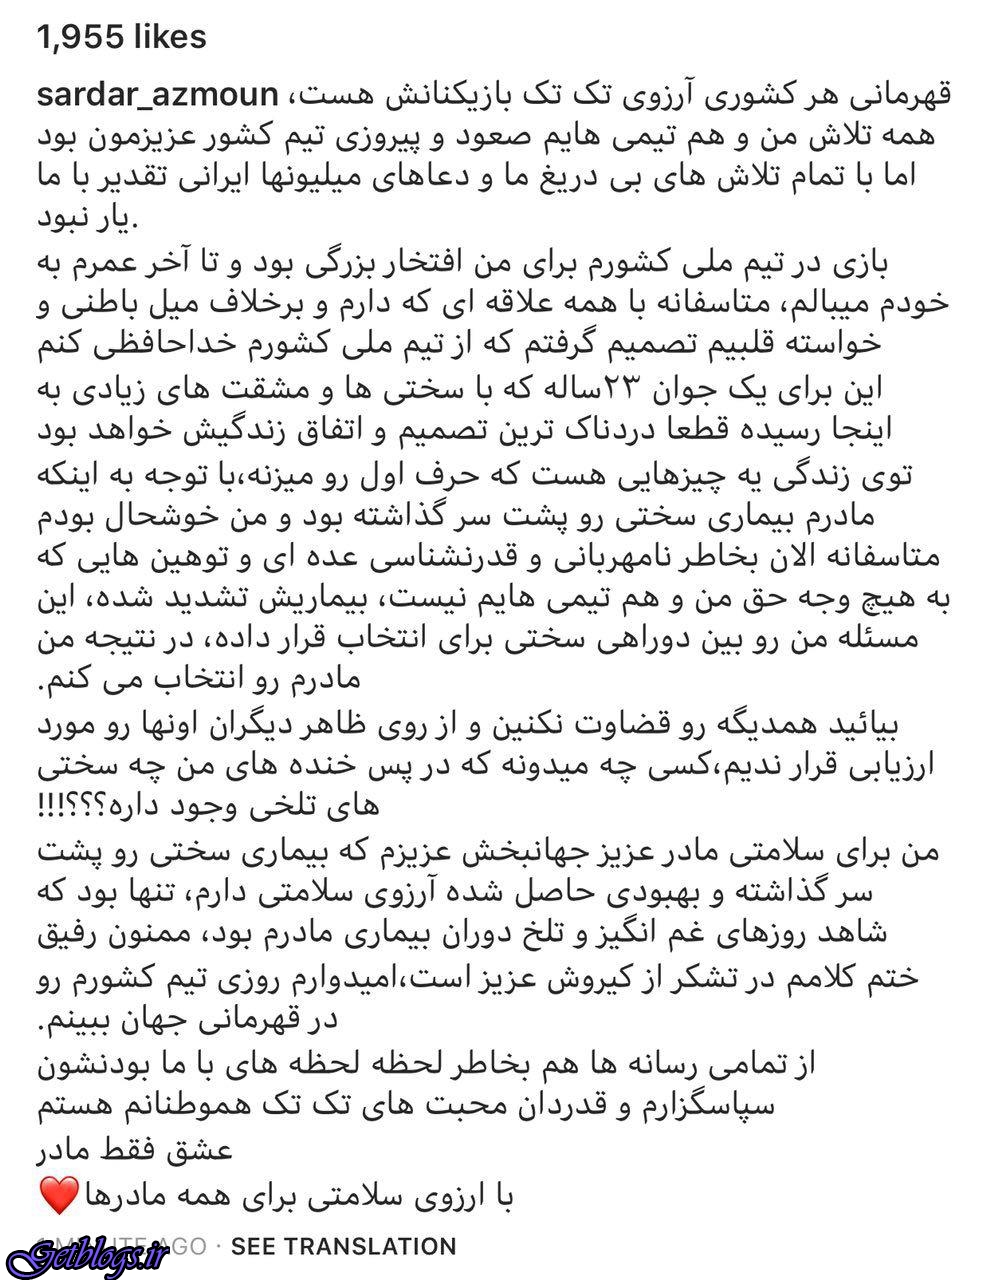 سردار آزمون هم از تیم ملی خداحافظی کرد (عکس)